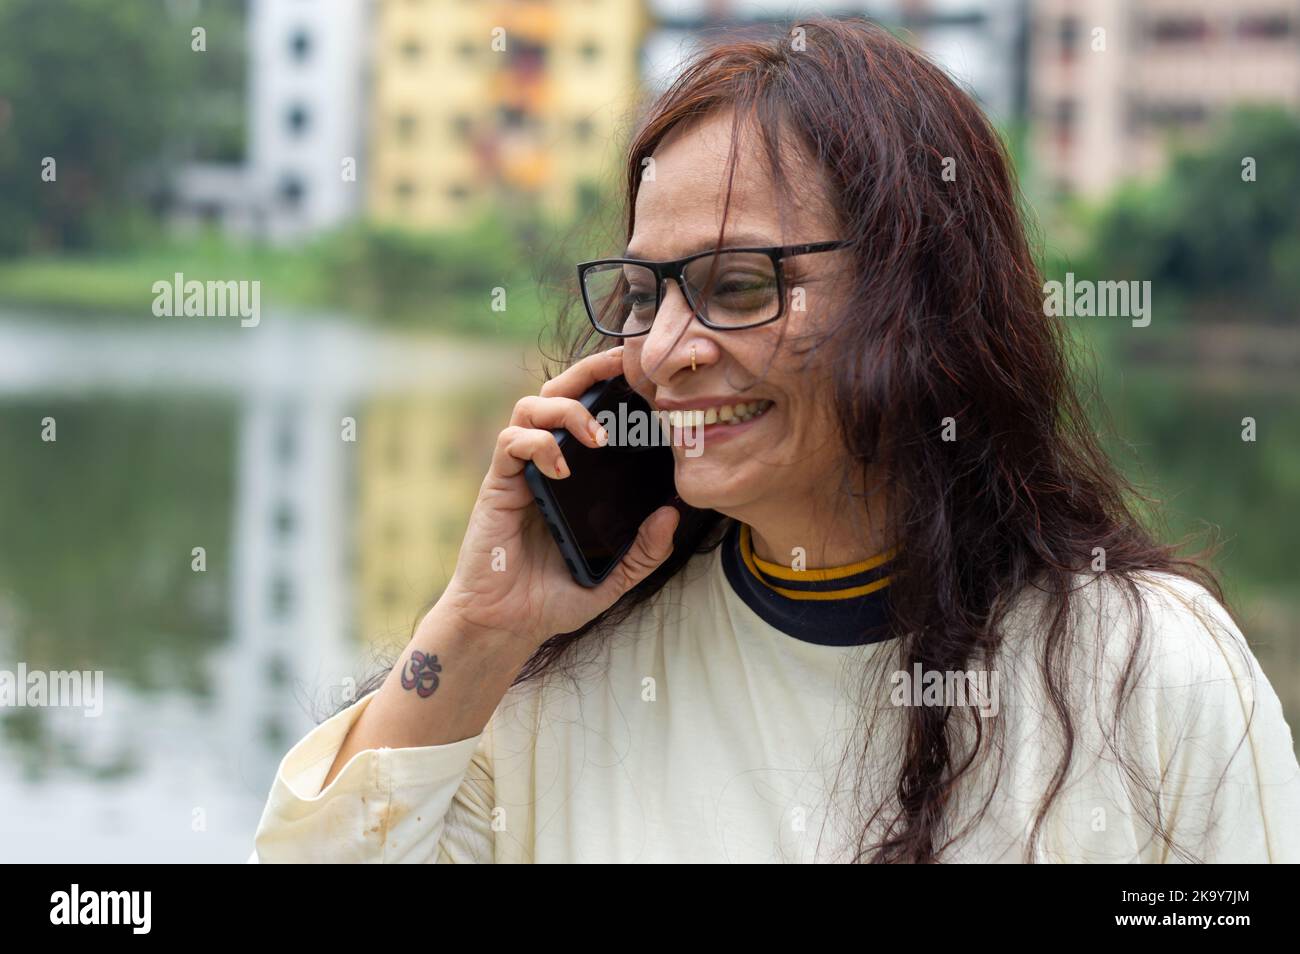 Lächelnde Frau mit langen braunen Haaren bei mittleren Erwachsenen, die im Freien auf dem Mobiltelefon spricht. Nahaufnahme. Sie trägt weißes T-Shirt und Specs. Vorderansicht. Kopf und Stockfoto